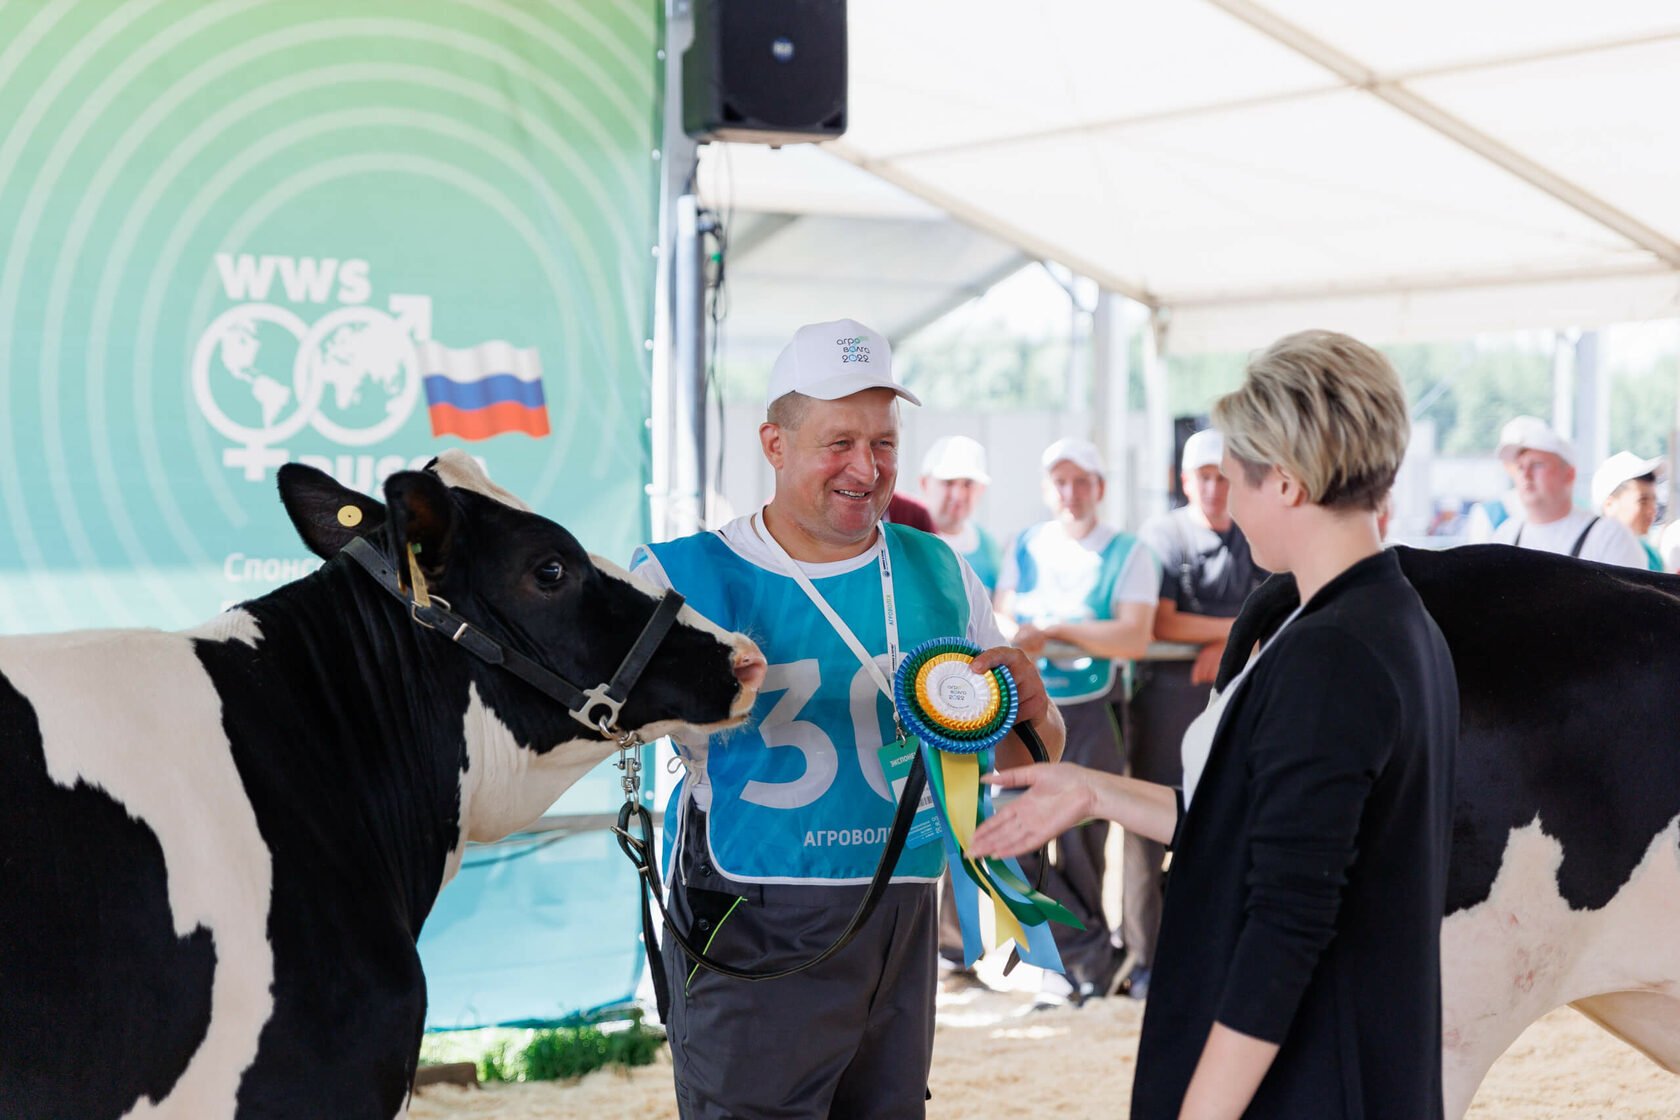 Всероссийский конкурс выводка животных молочного направления продуктивности